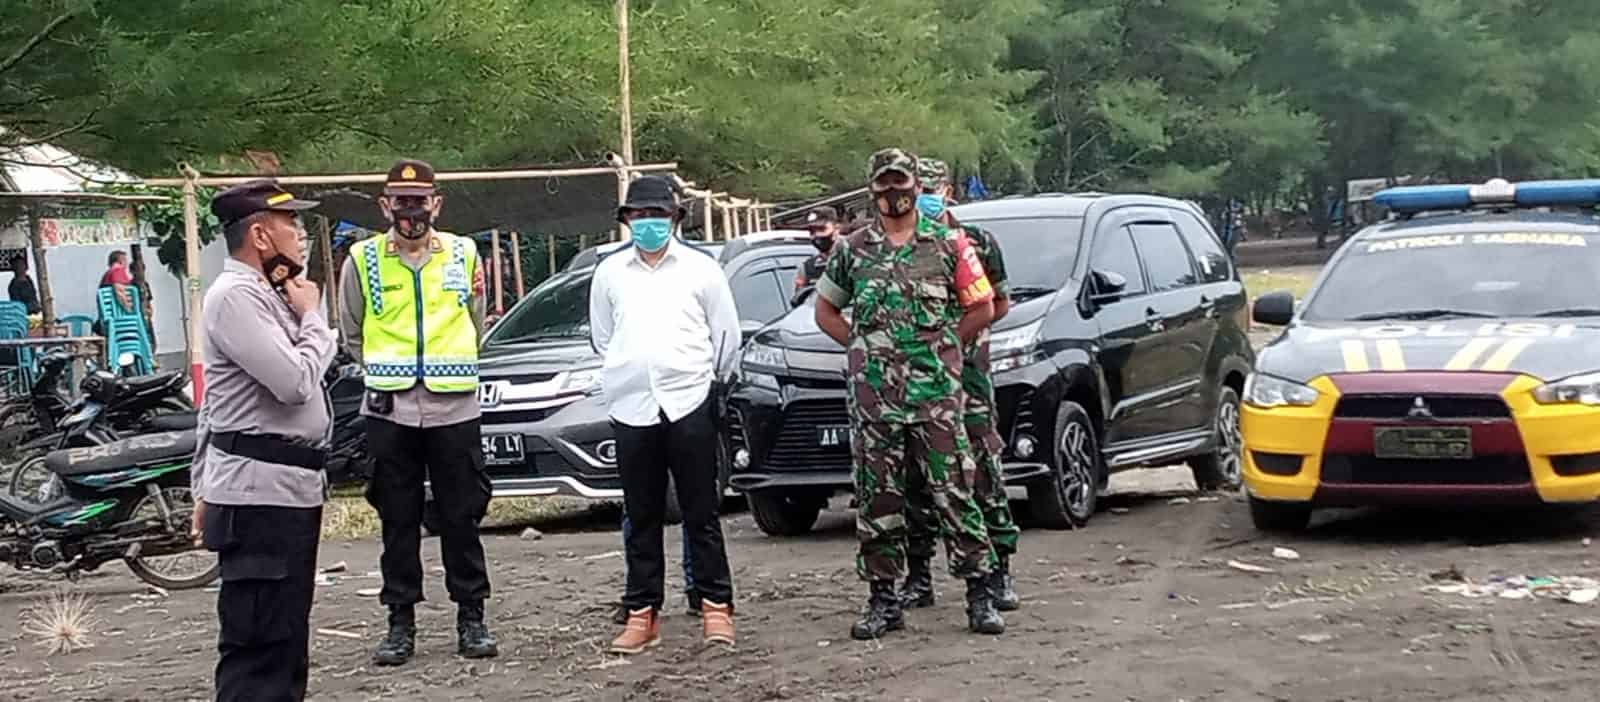 Kadislitbangad Apresiasi Peran Aktif Anggota Dislitbang TNI AD Bersinegi dengan Polri Jaga Ketertiban Masyarakat di Kebumen